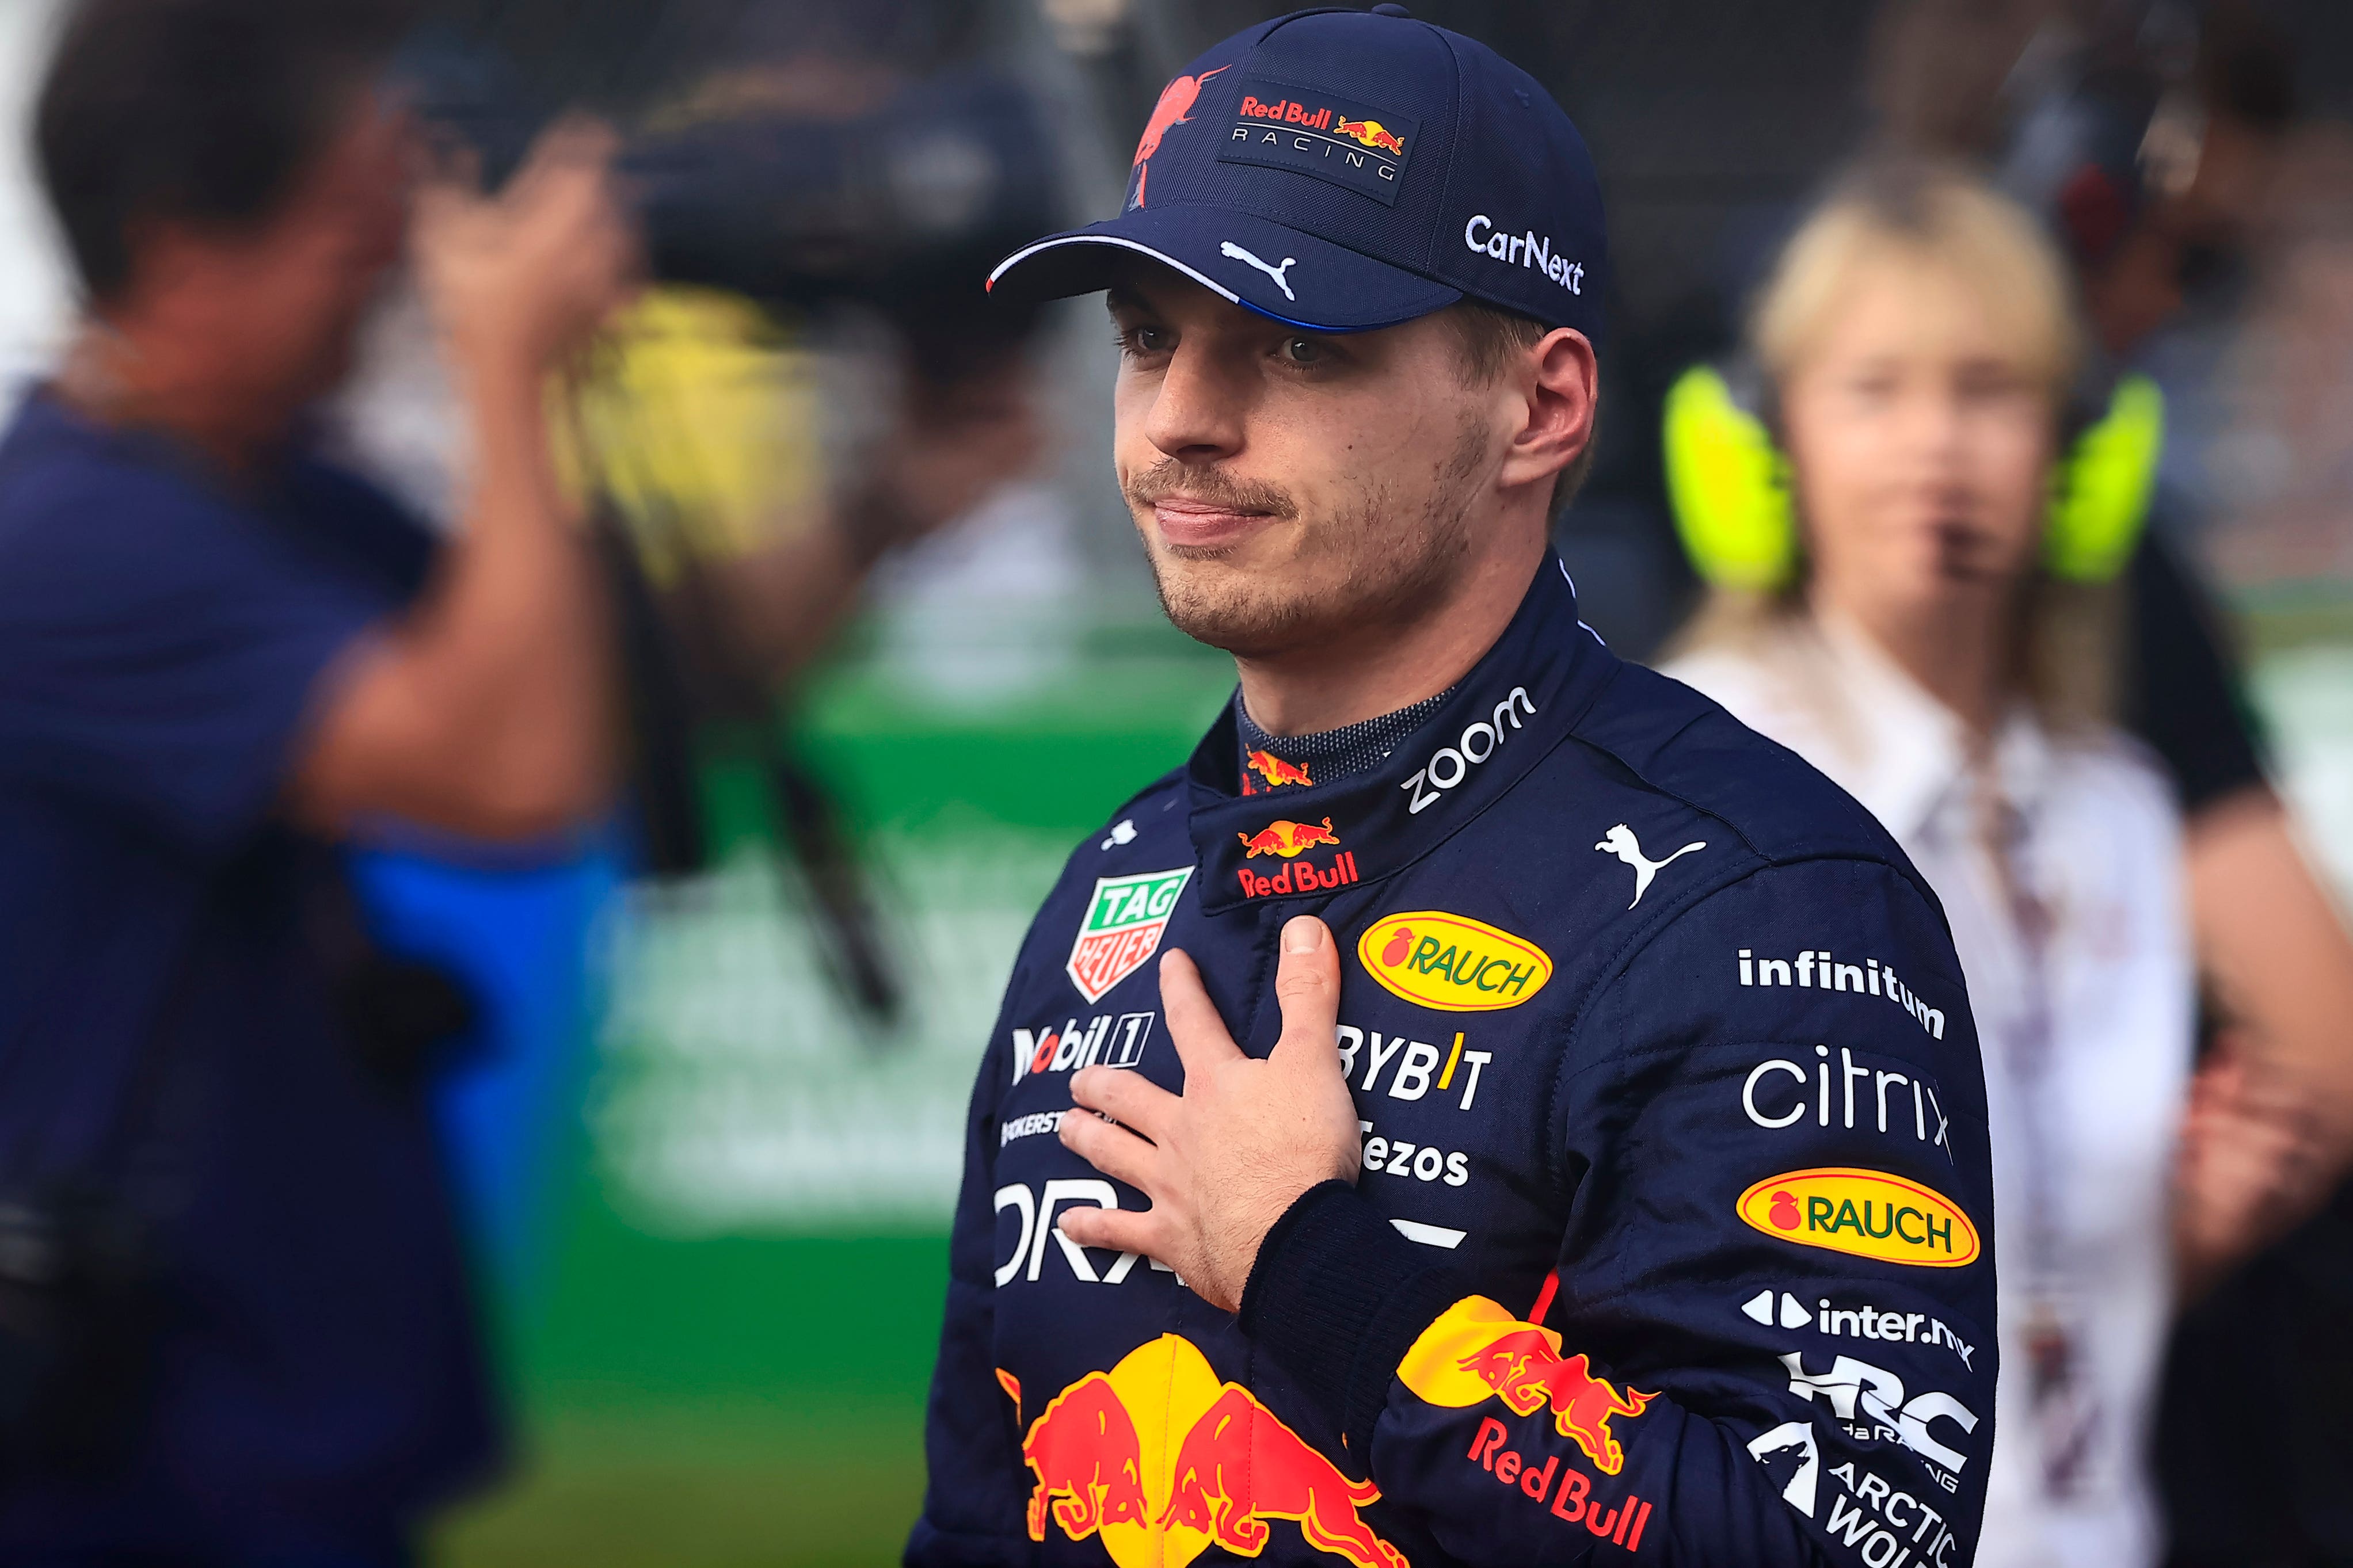 Beroep Klimatologische bergen Doorbraak Max Verstappen's Red Bull team to snub Sky interviews after perceived title  dig | The Independent